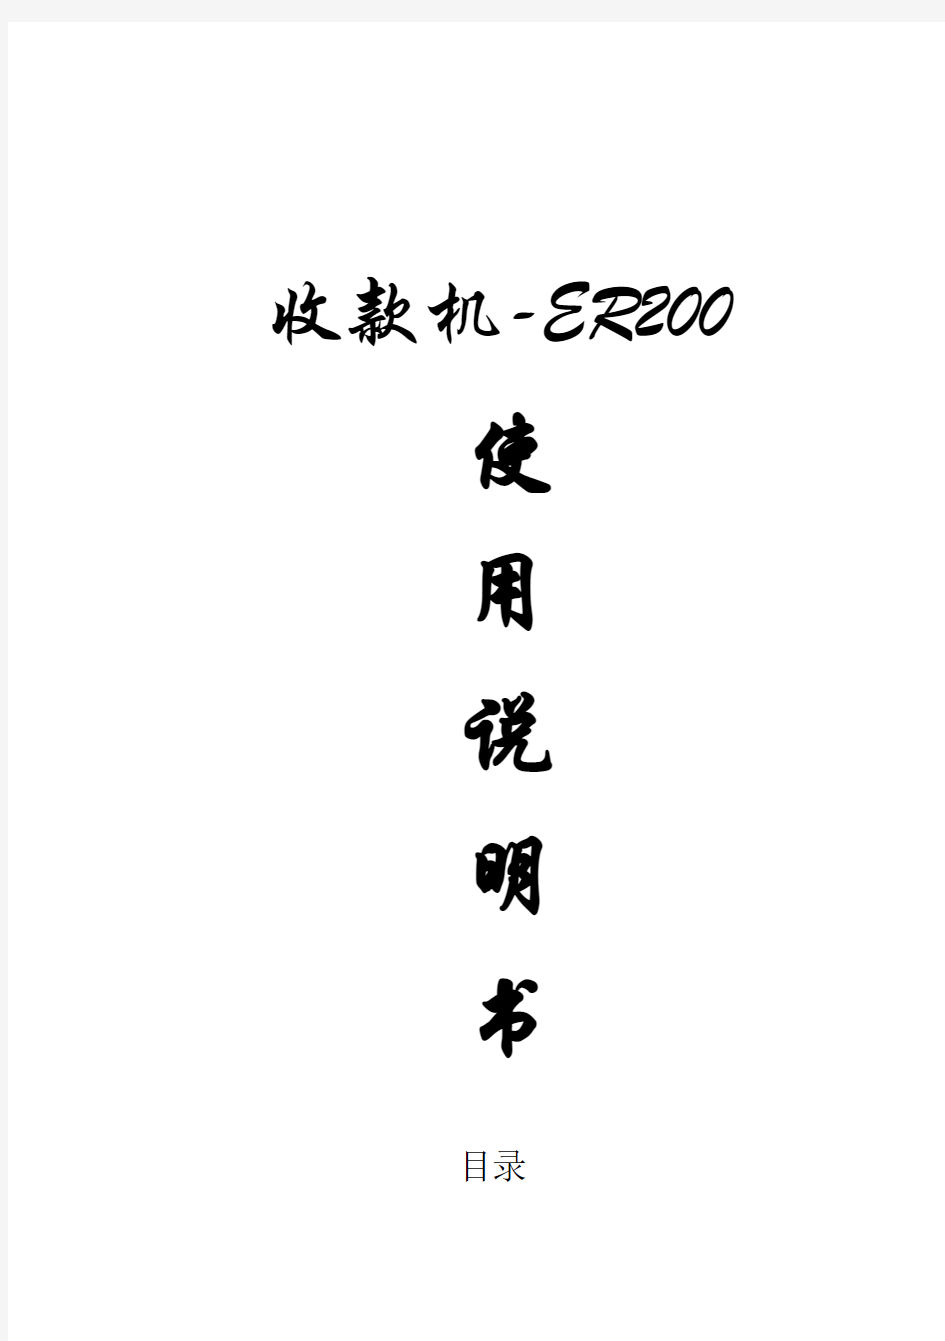 2017年收款机-ER200使用说明书(word版本)